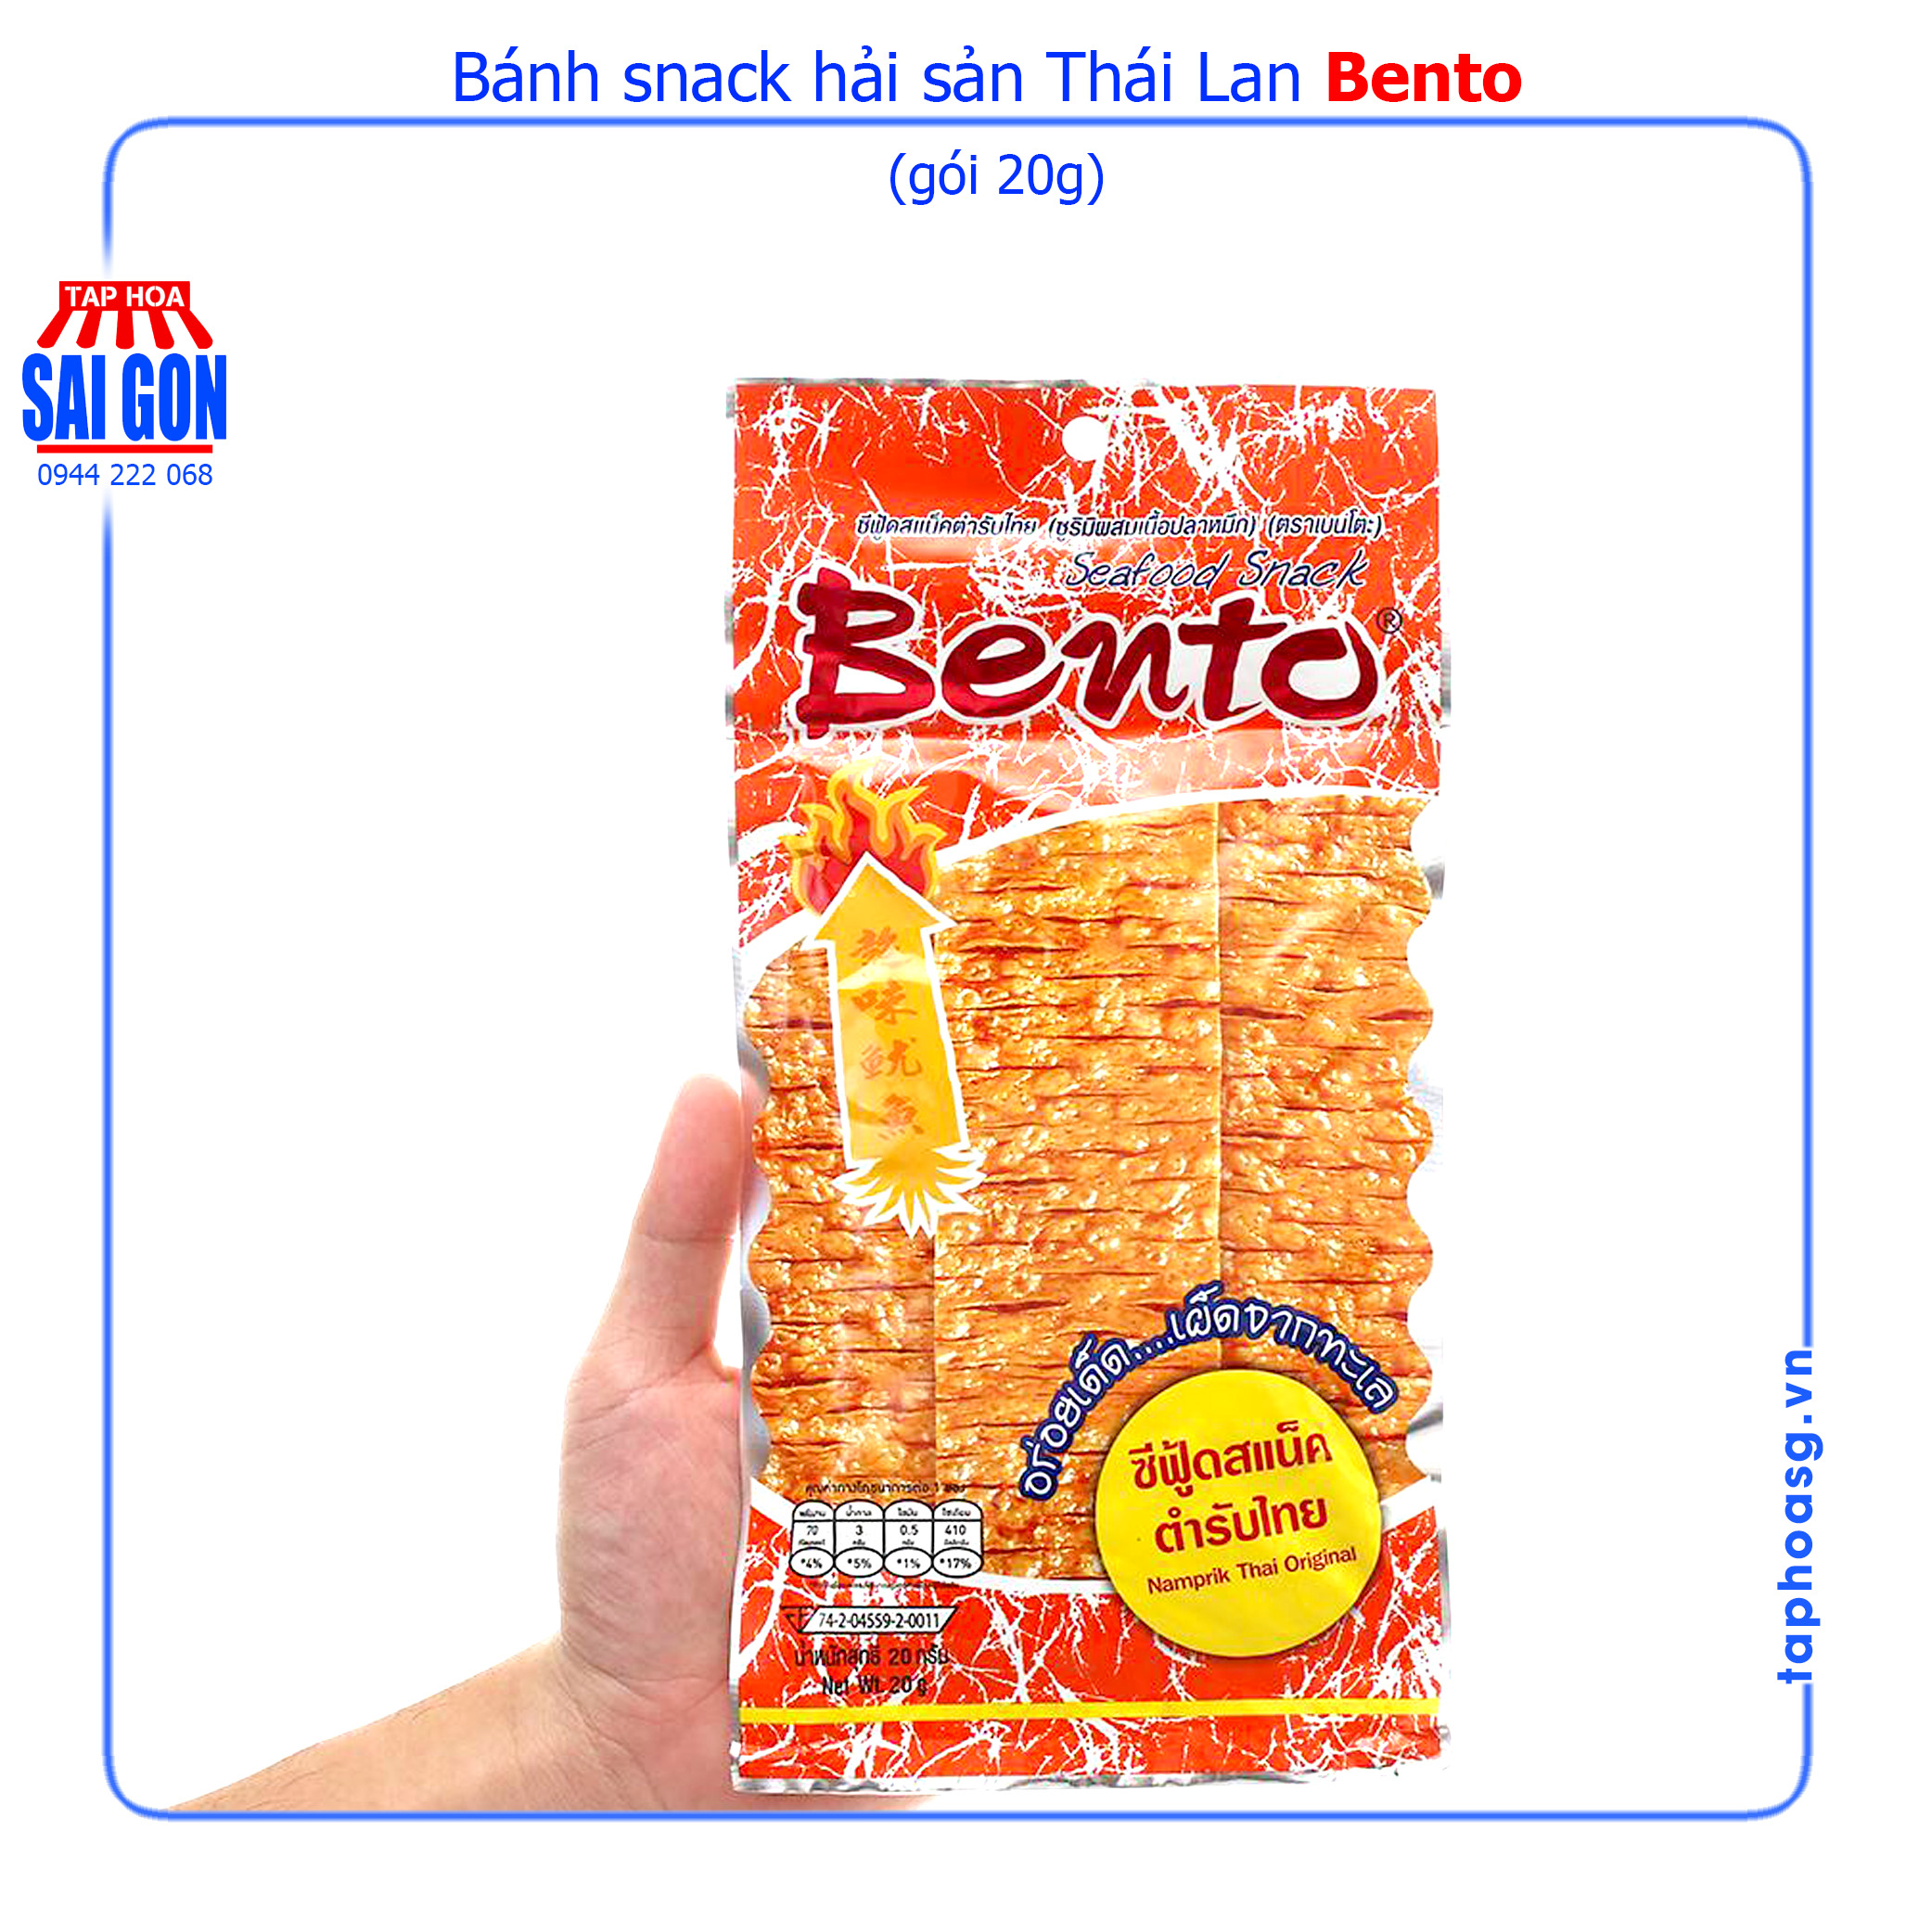 bánh snack hải sản bento gói 20g với các gia vị thái lan mang đến vị cay 2